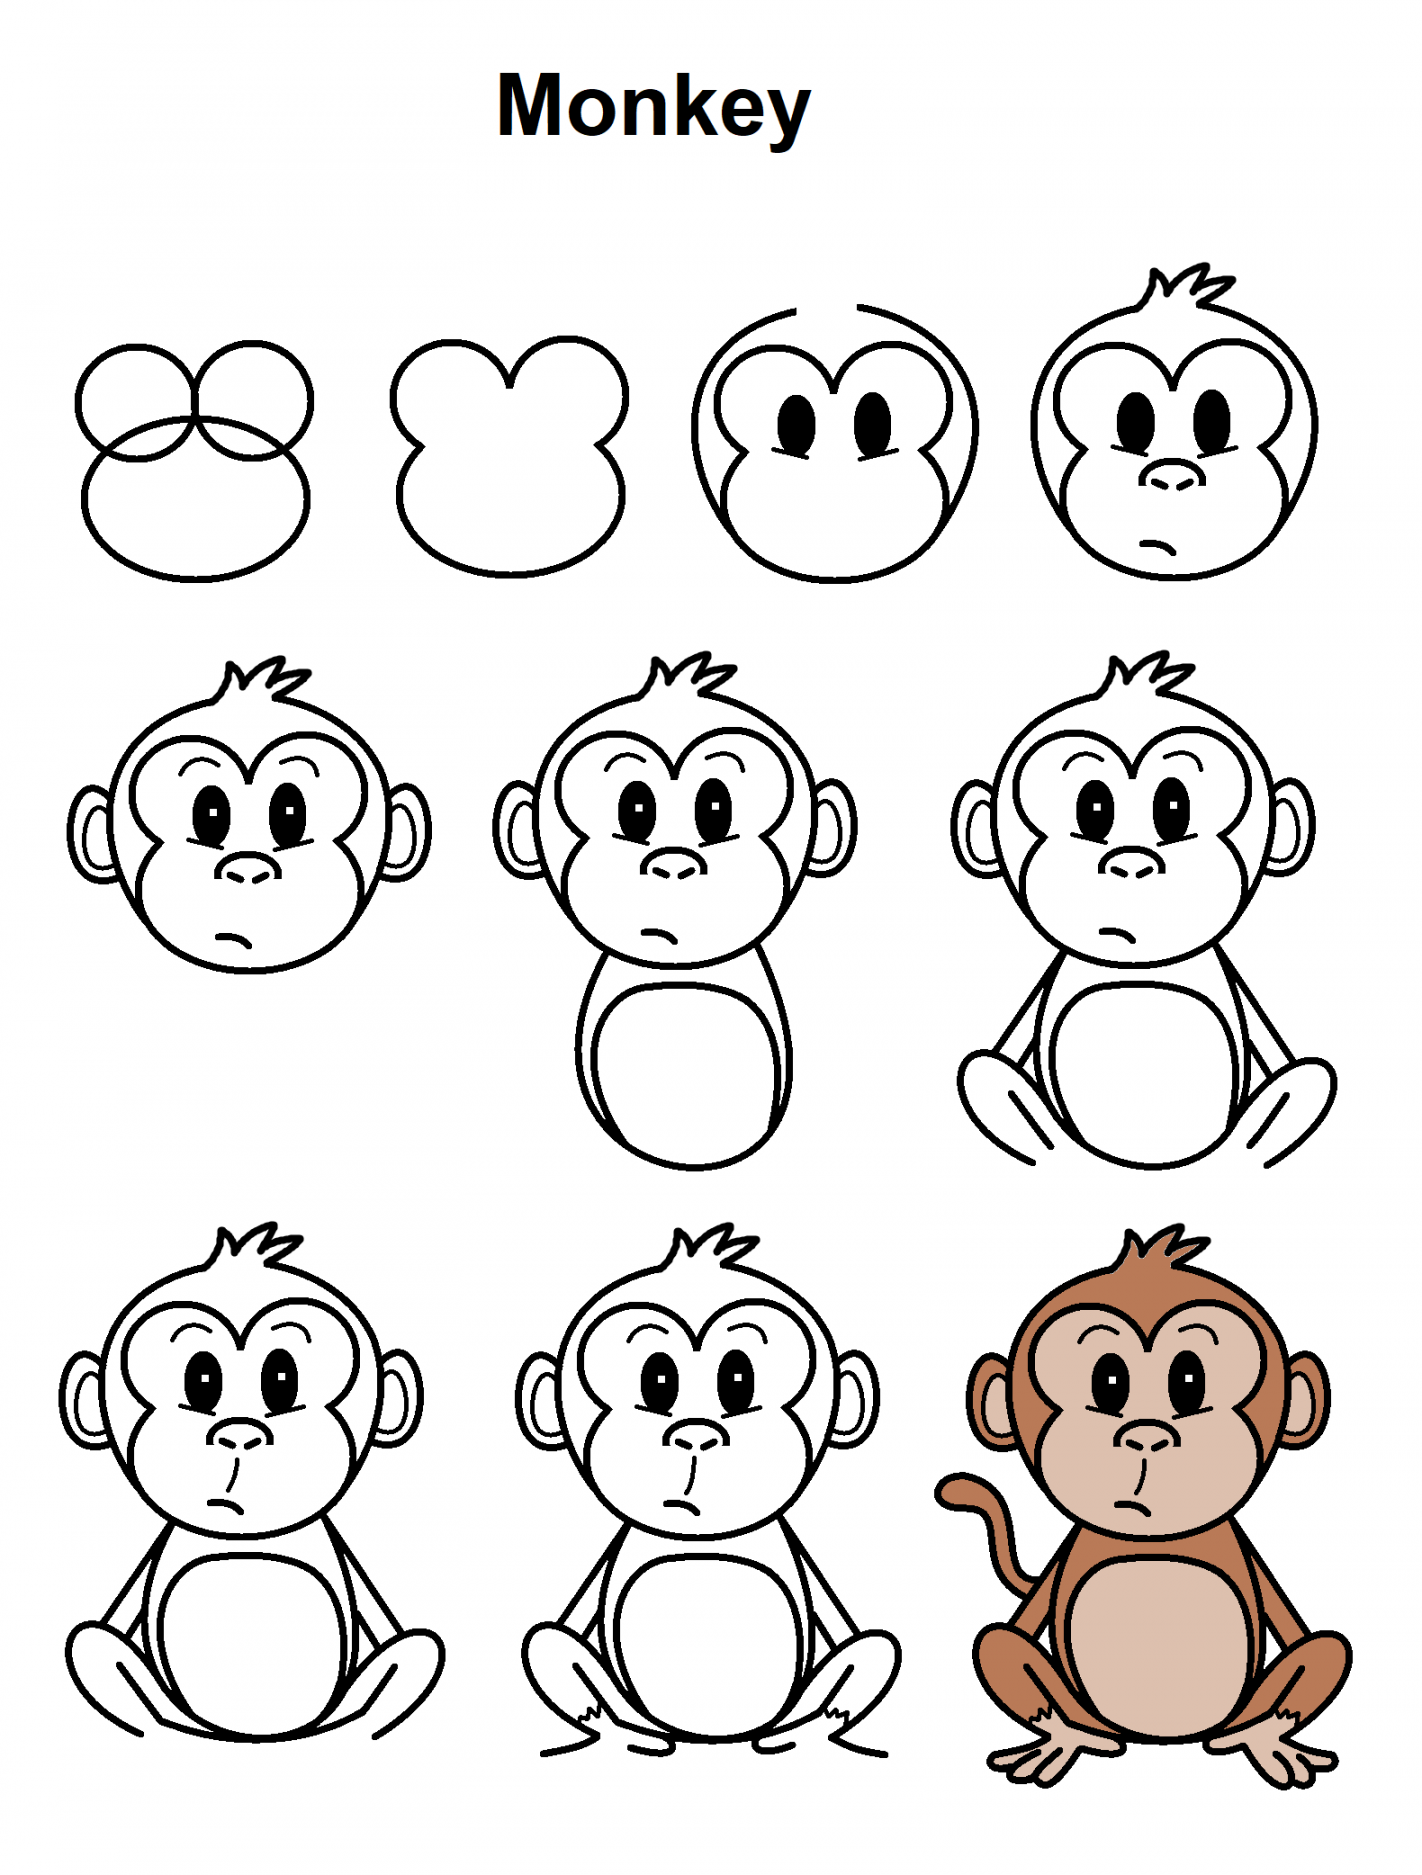 Monkey  Easy cartoon drawings, Monkey drawing, Cute easy drawings